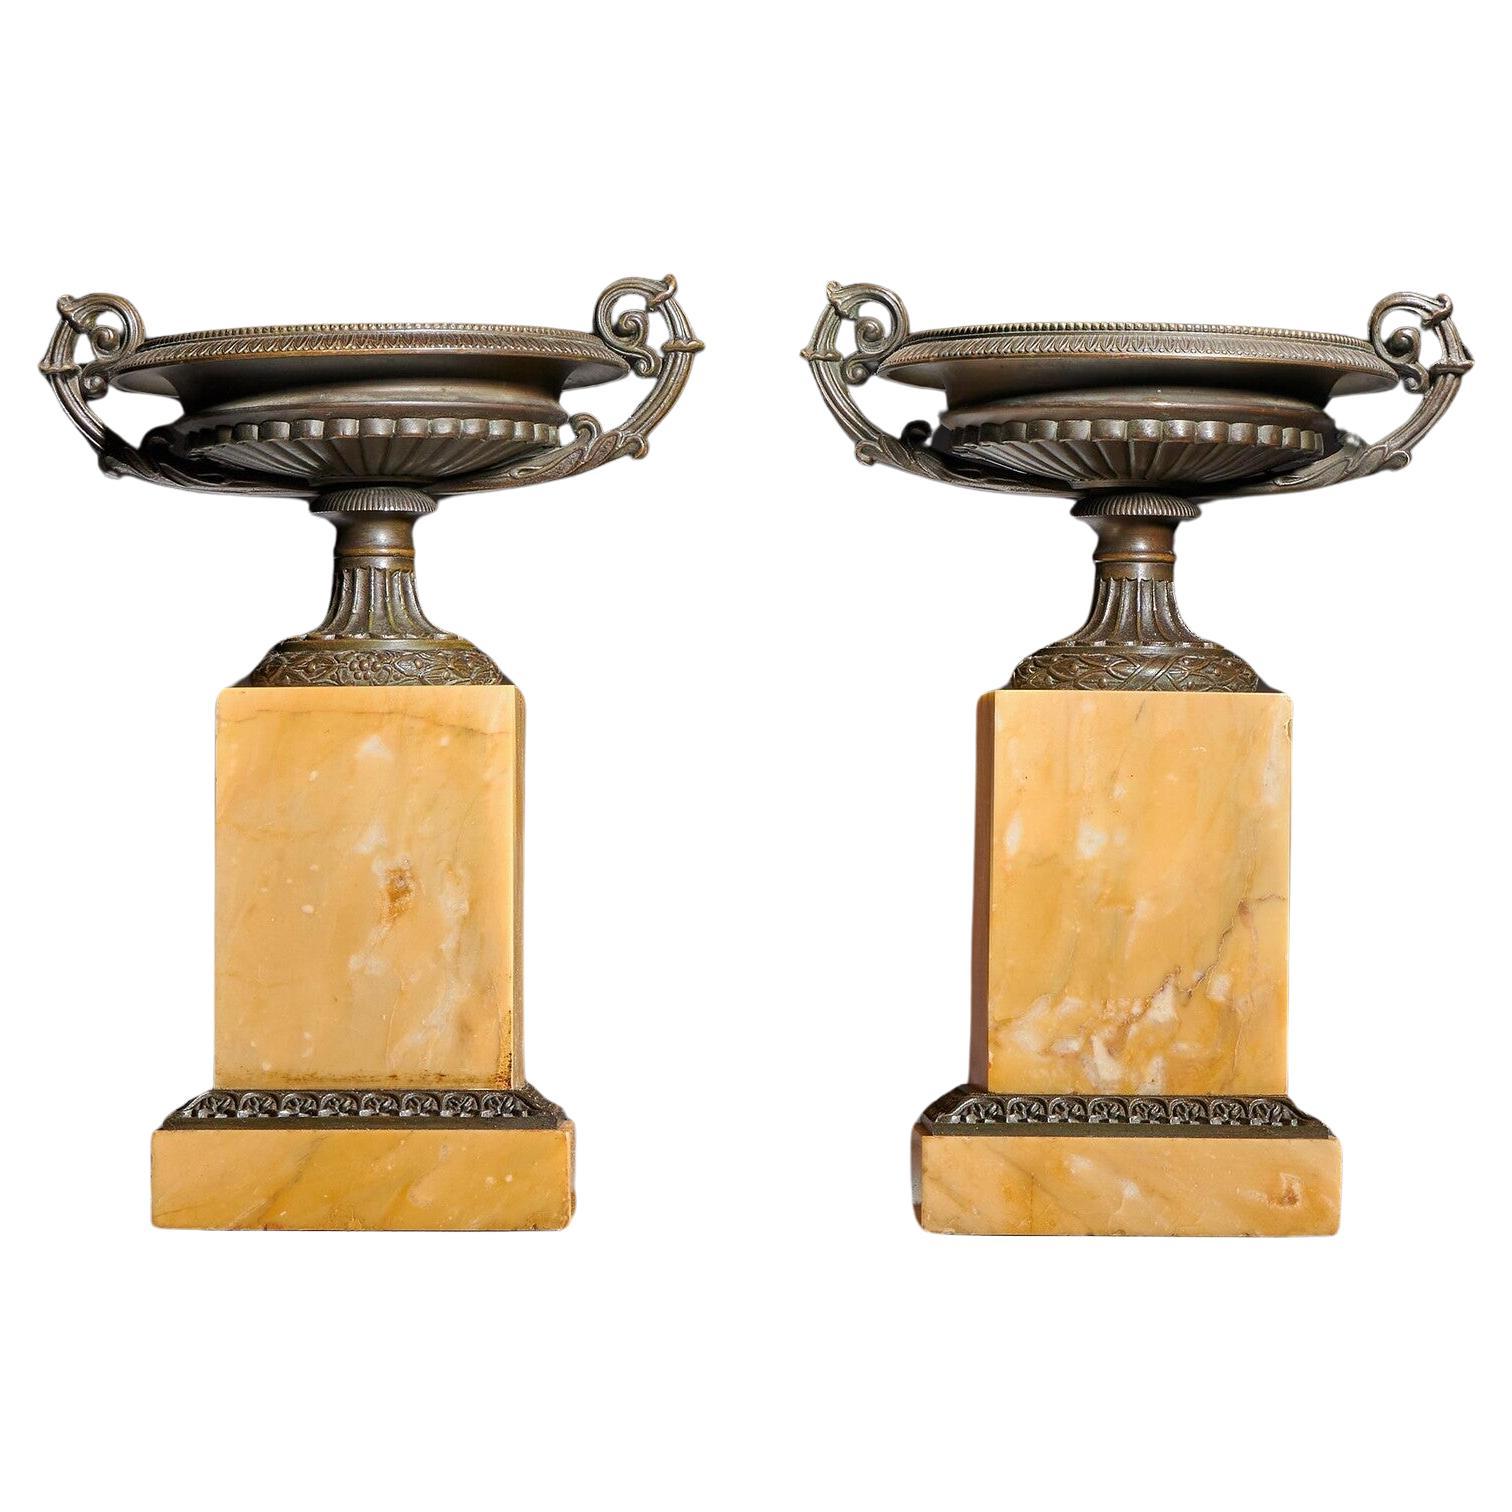 Paire de tazzas en bronze et en marbre de Sienne du début du XIXe siècle, datant du Grand Tour de France en vente